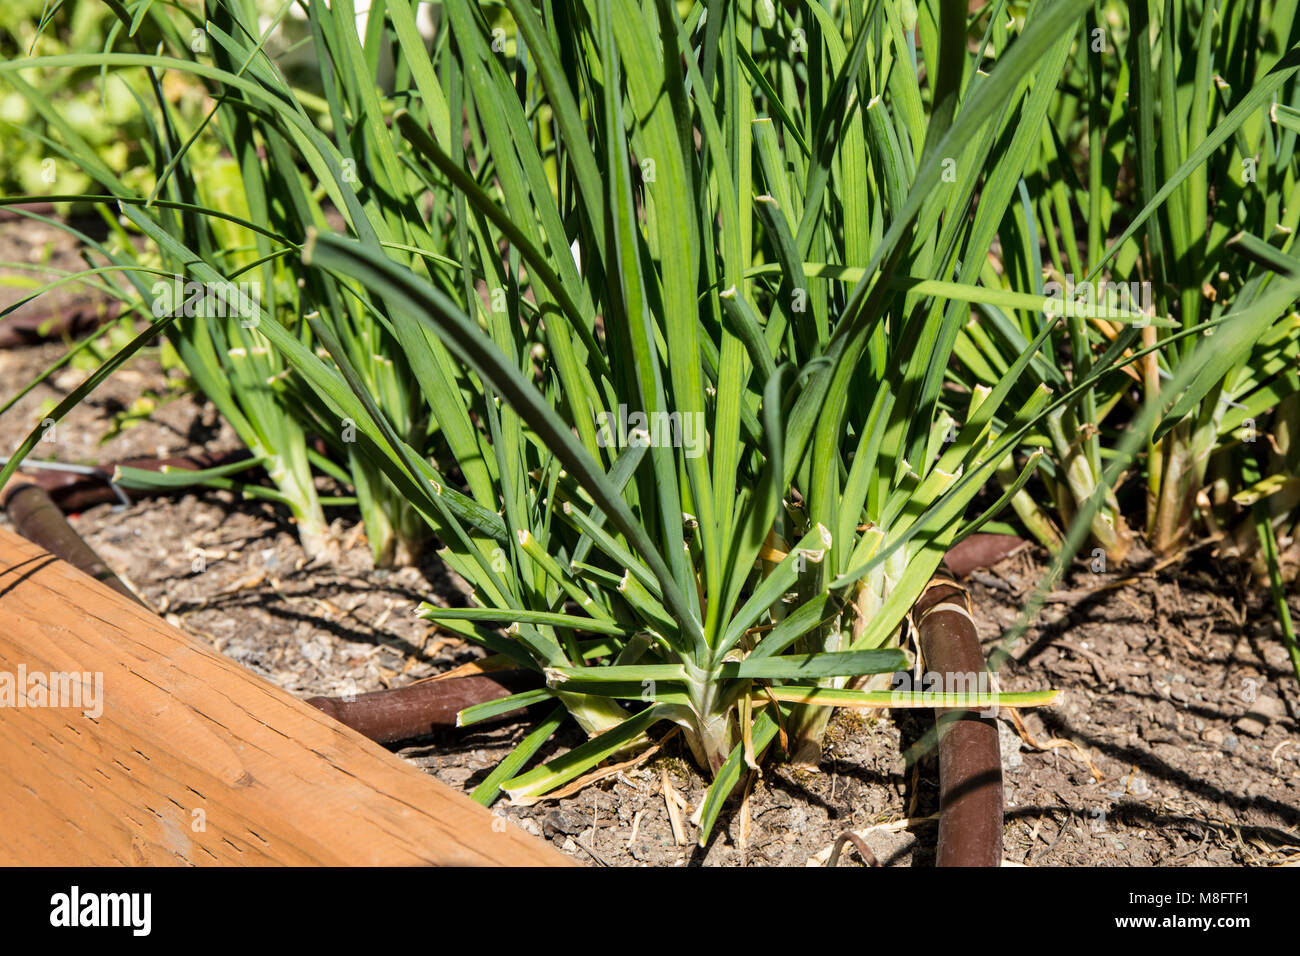 Knoblauch Schnittlauch wächst. Allium tuberosum ist eine mehrjährige Pflanze, die aus einer kleinen, länglichen Glühbirne Stockfoto